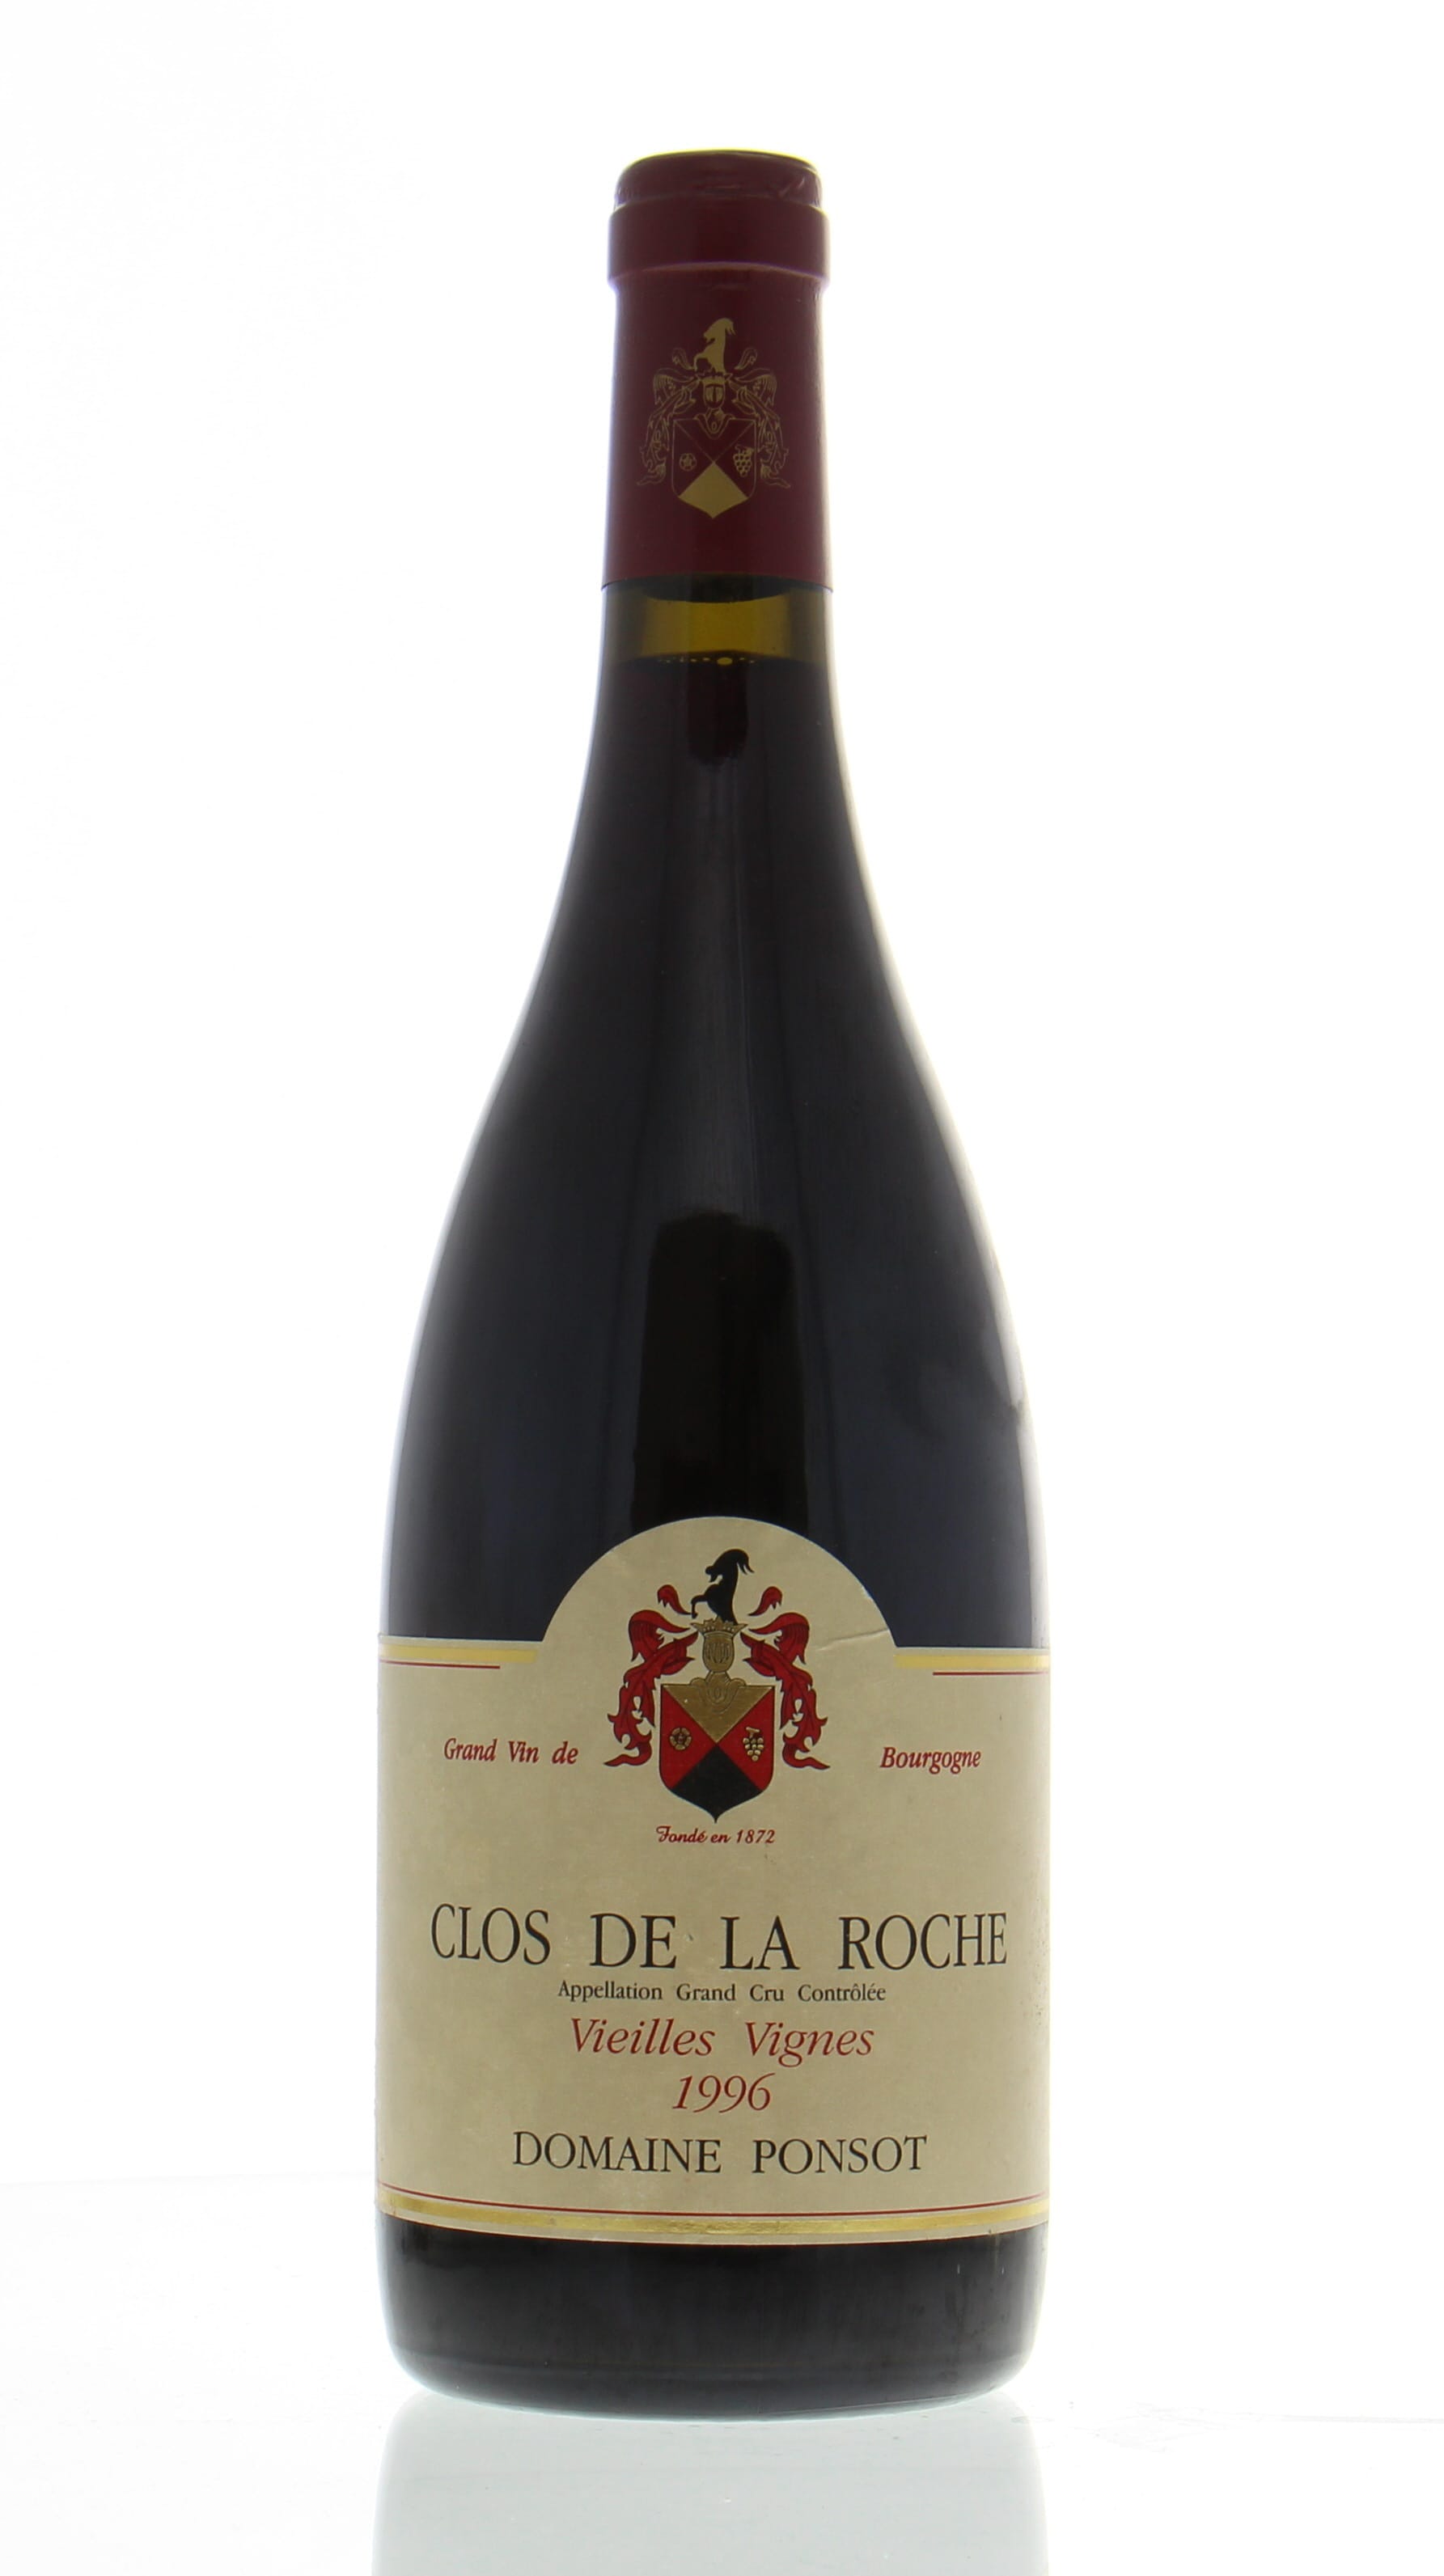 Domaine Ponsot - Clos de la Roche Cuvee Vieille Vignes 1996